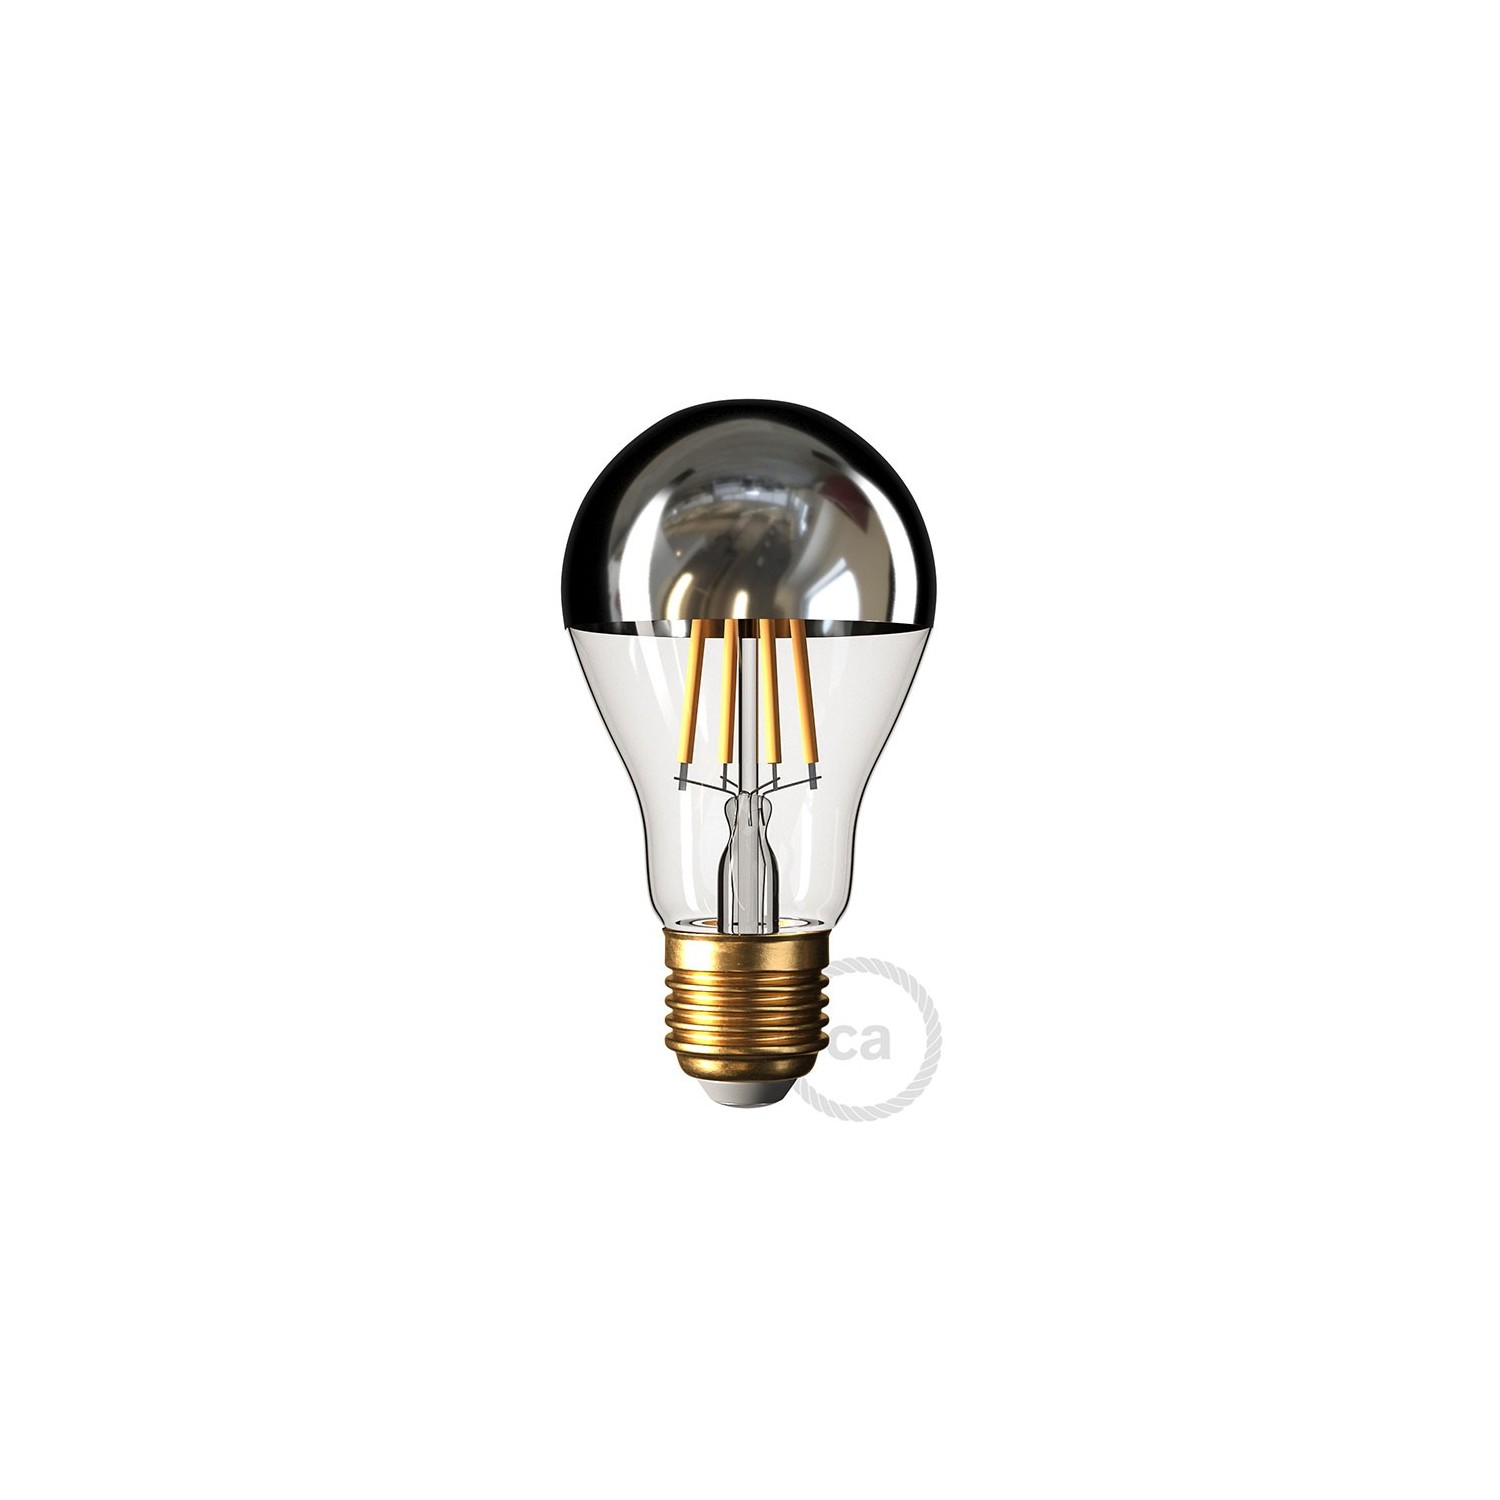 Væg- eller loftslampe med lampeskærm med majolica-effekt - vandtæt IP44